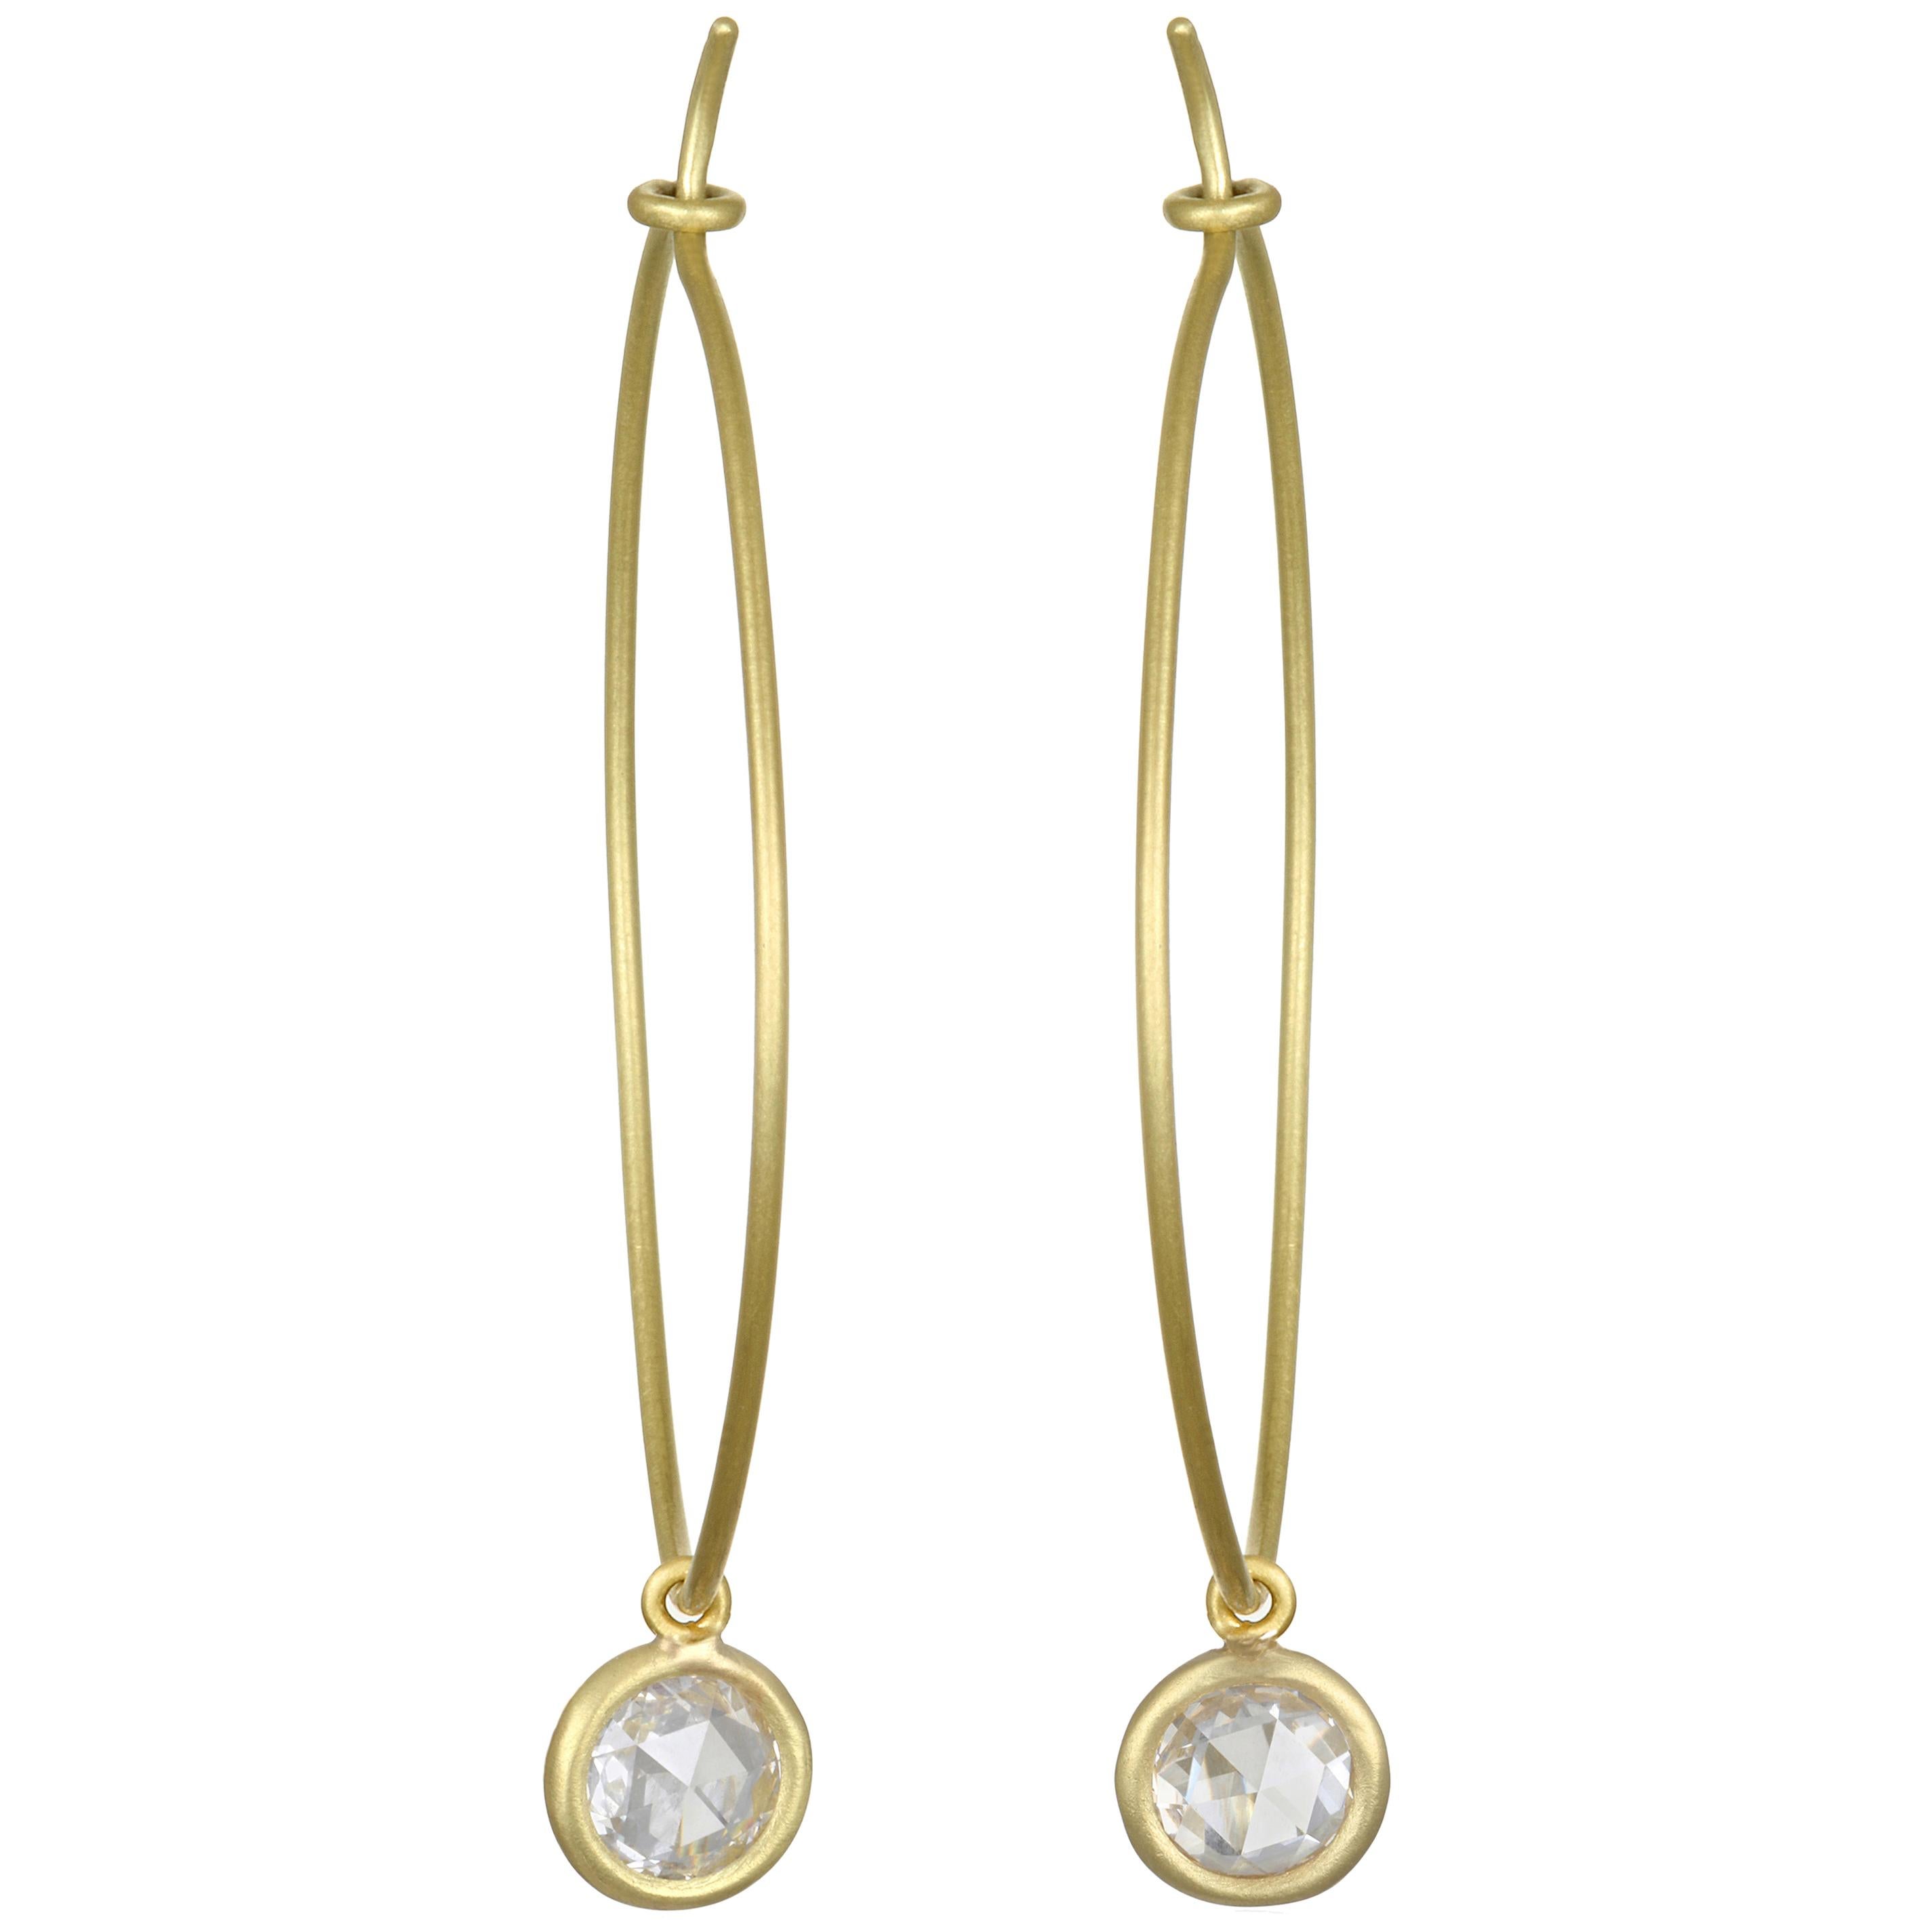 Faye Kim 18 Karat Gold Wire Hoop Earrings with White Sapphire Drops